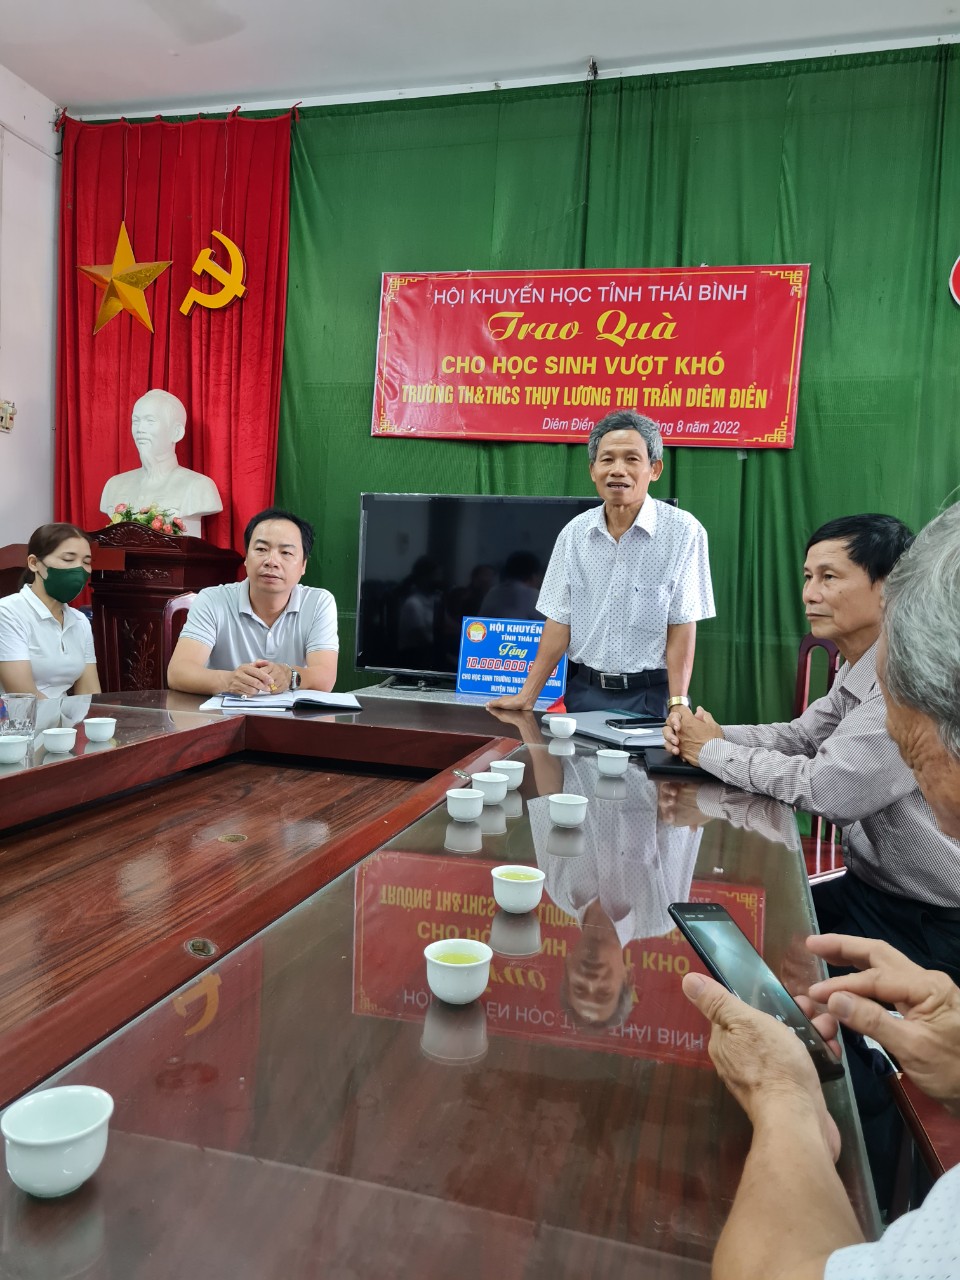 Trao quà cho học sinh vượt khó trường TH&THCS Thụy Lương thị trấn Diêm Điền - 2